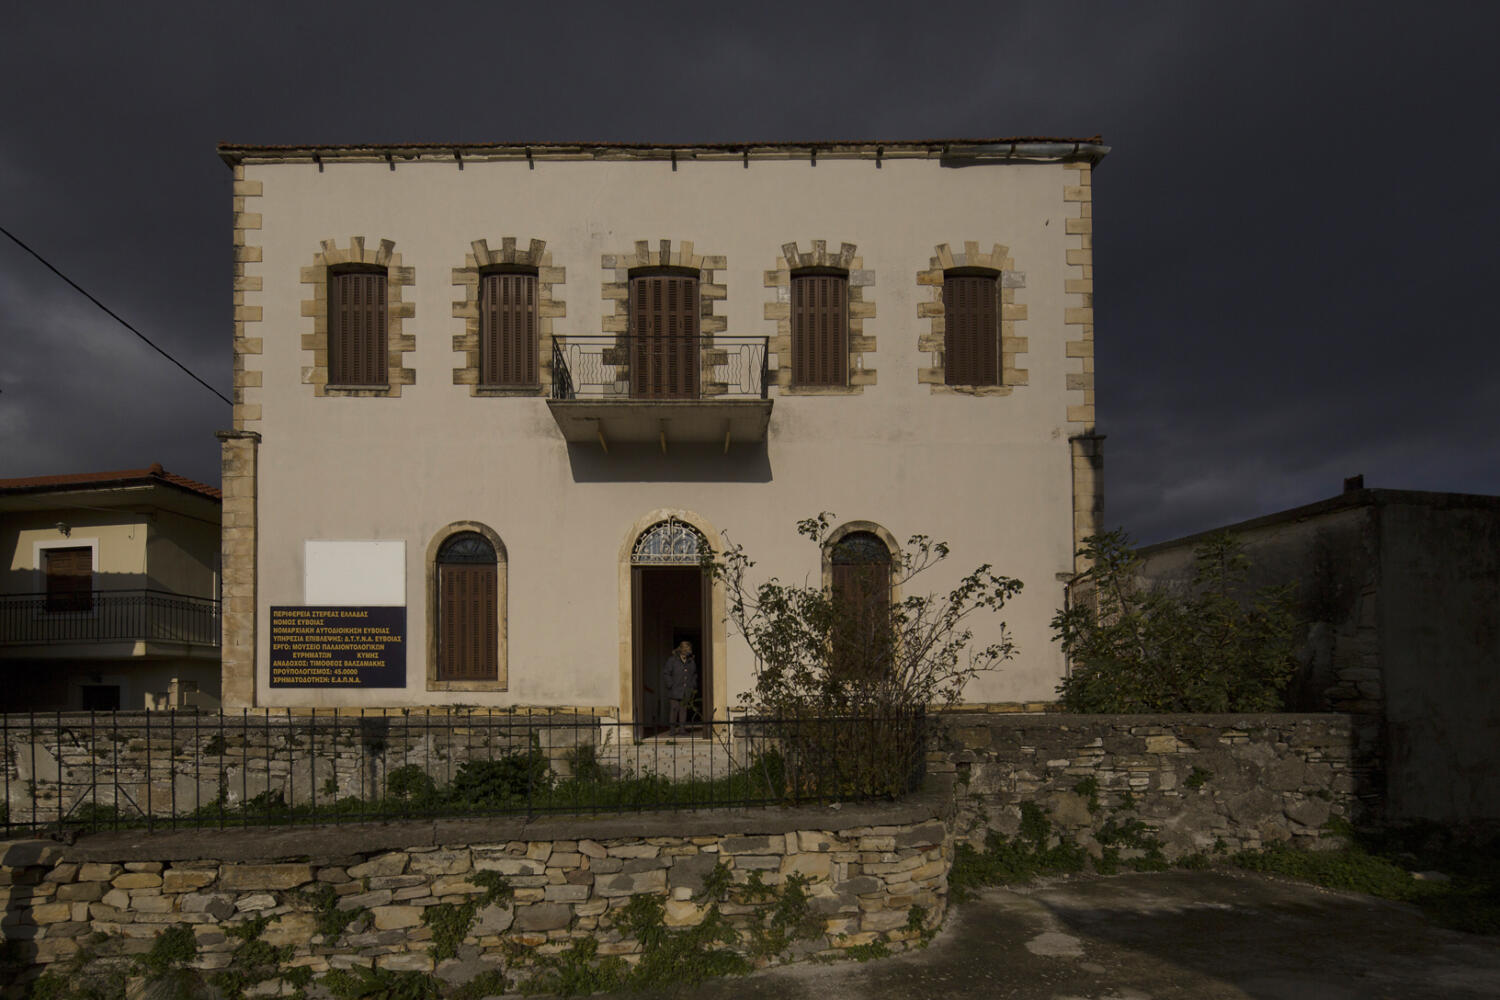 Αρχοντικό Χρυσανθόπουλου – Μουσείο, χωριό Πύργος. Φωτογραφία: ©Βασίλης Συκάς, για τον Δήμο Κύμης-Αλιβερίου